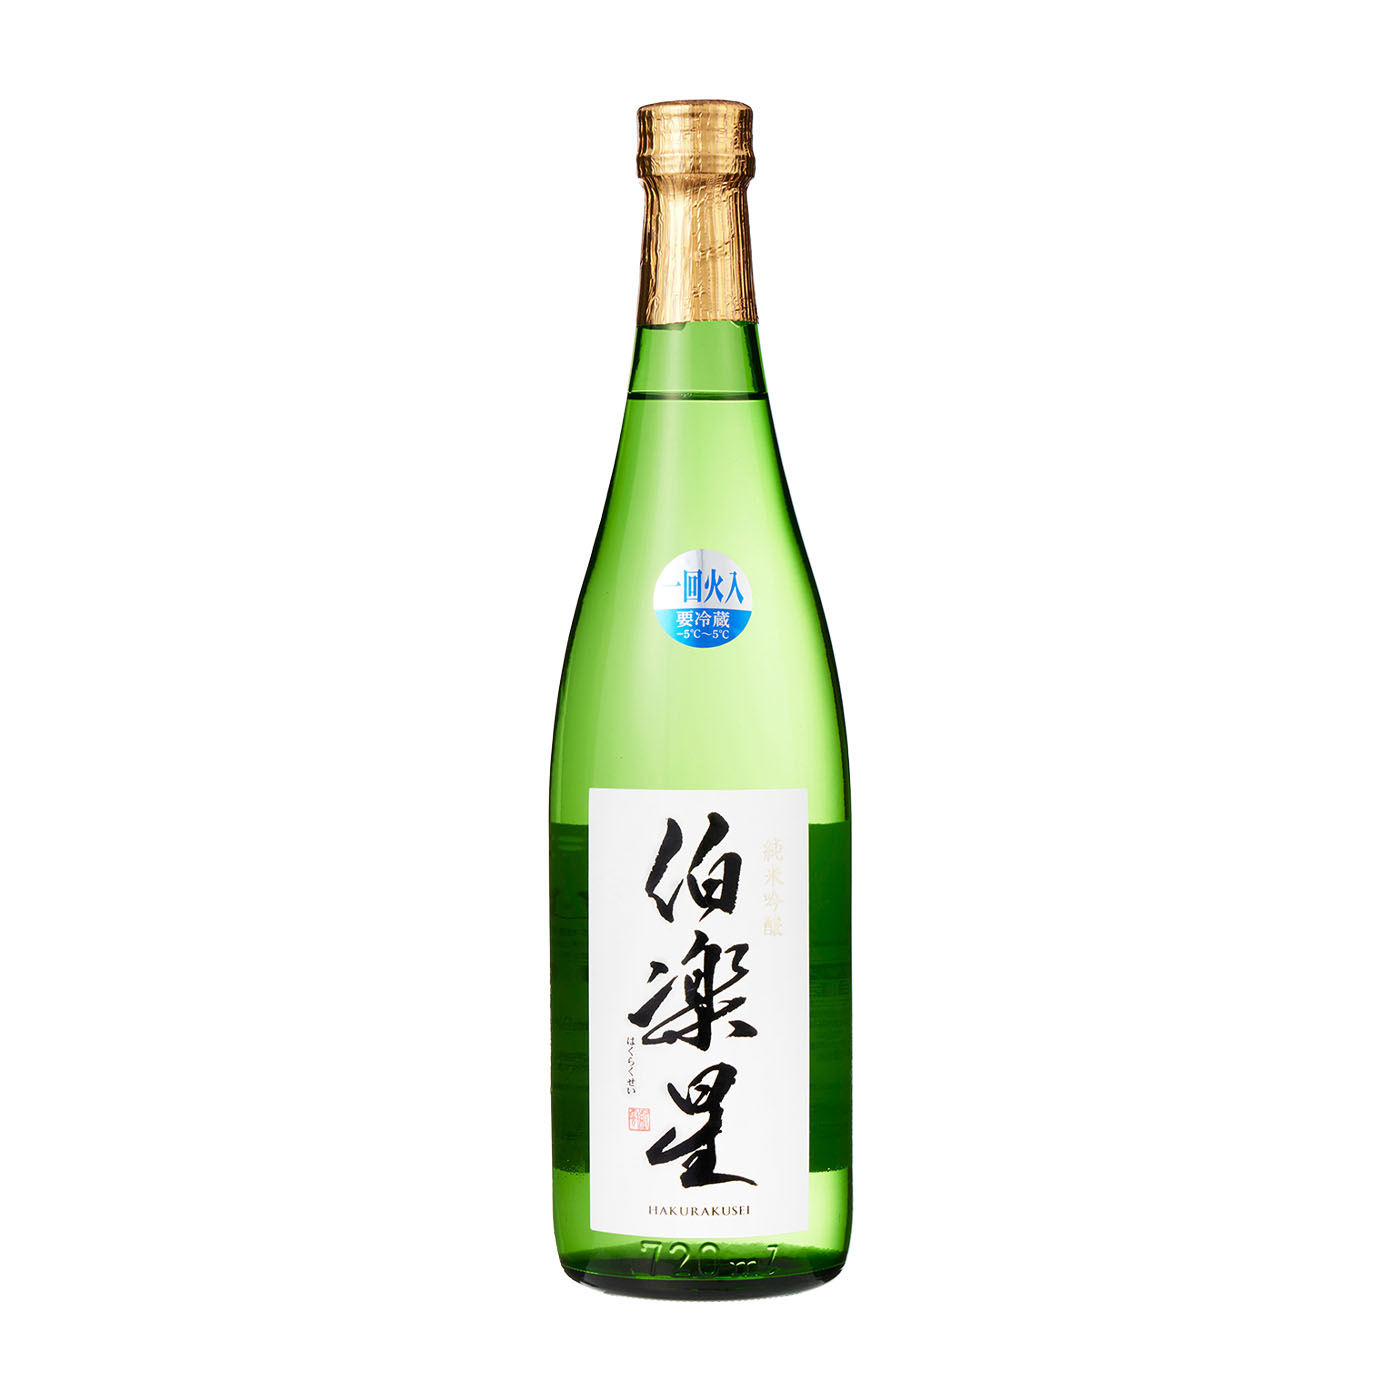 伯楽星 純米大吟醸酒 生詰 720ml - 日本酒